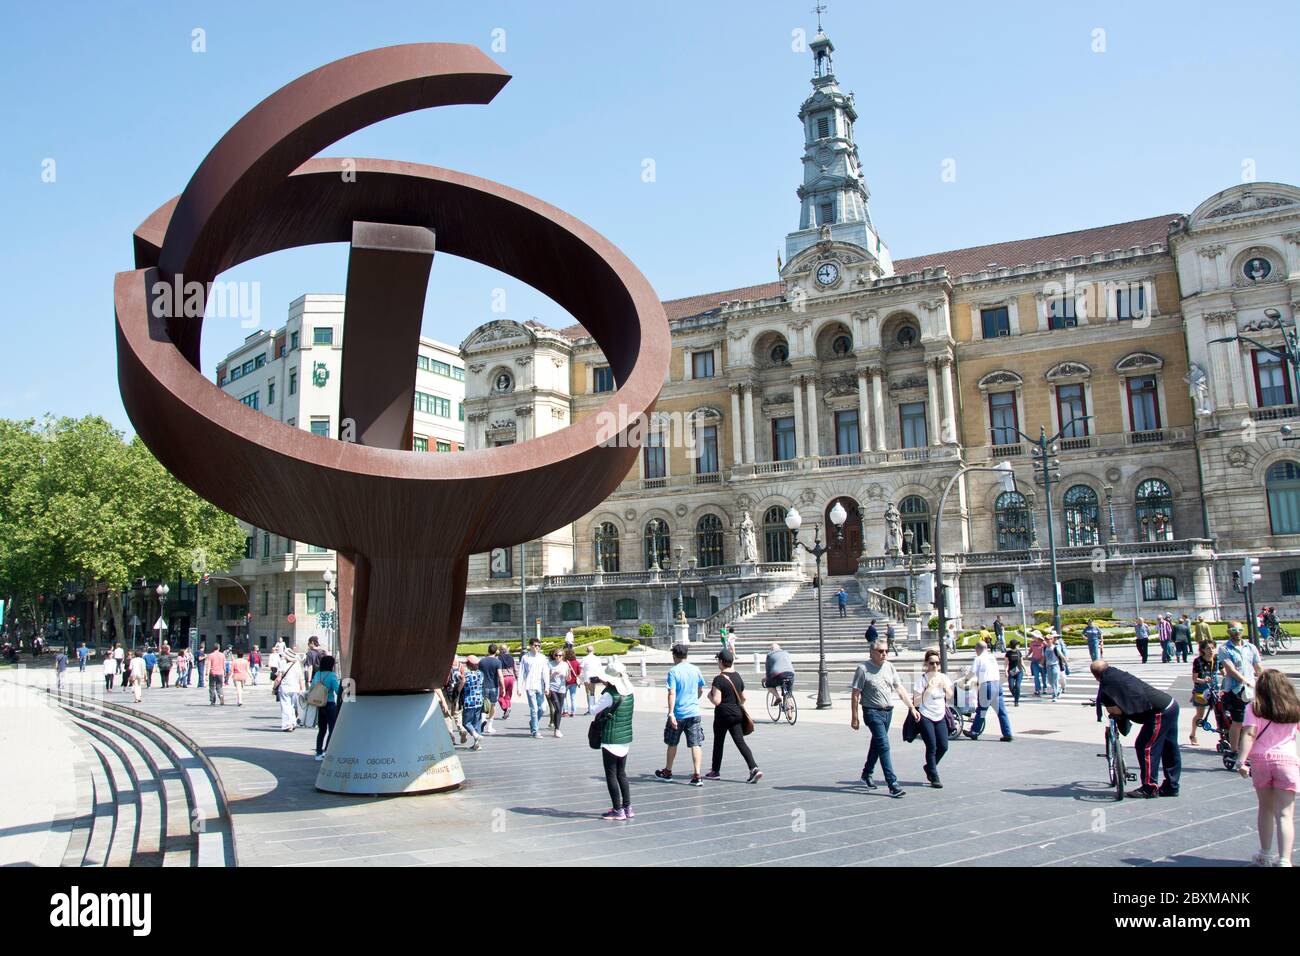 Chillida-Eisenskulptur vor dem Regierungsgebäude in Bilbao Stock Photo